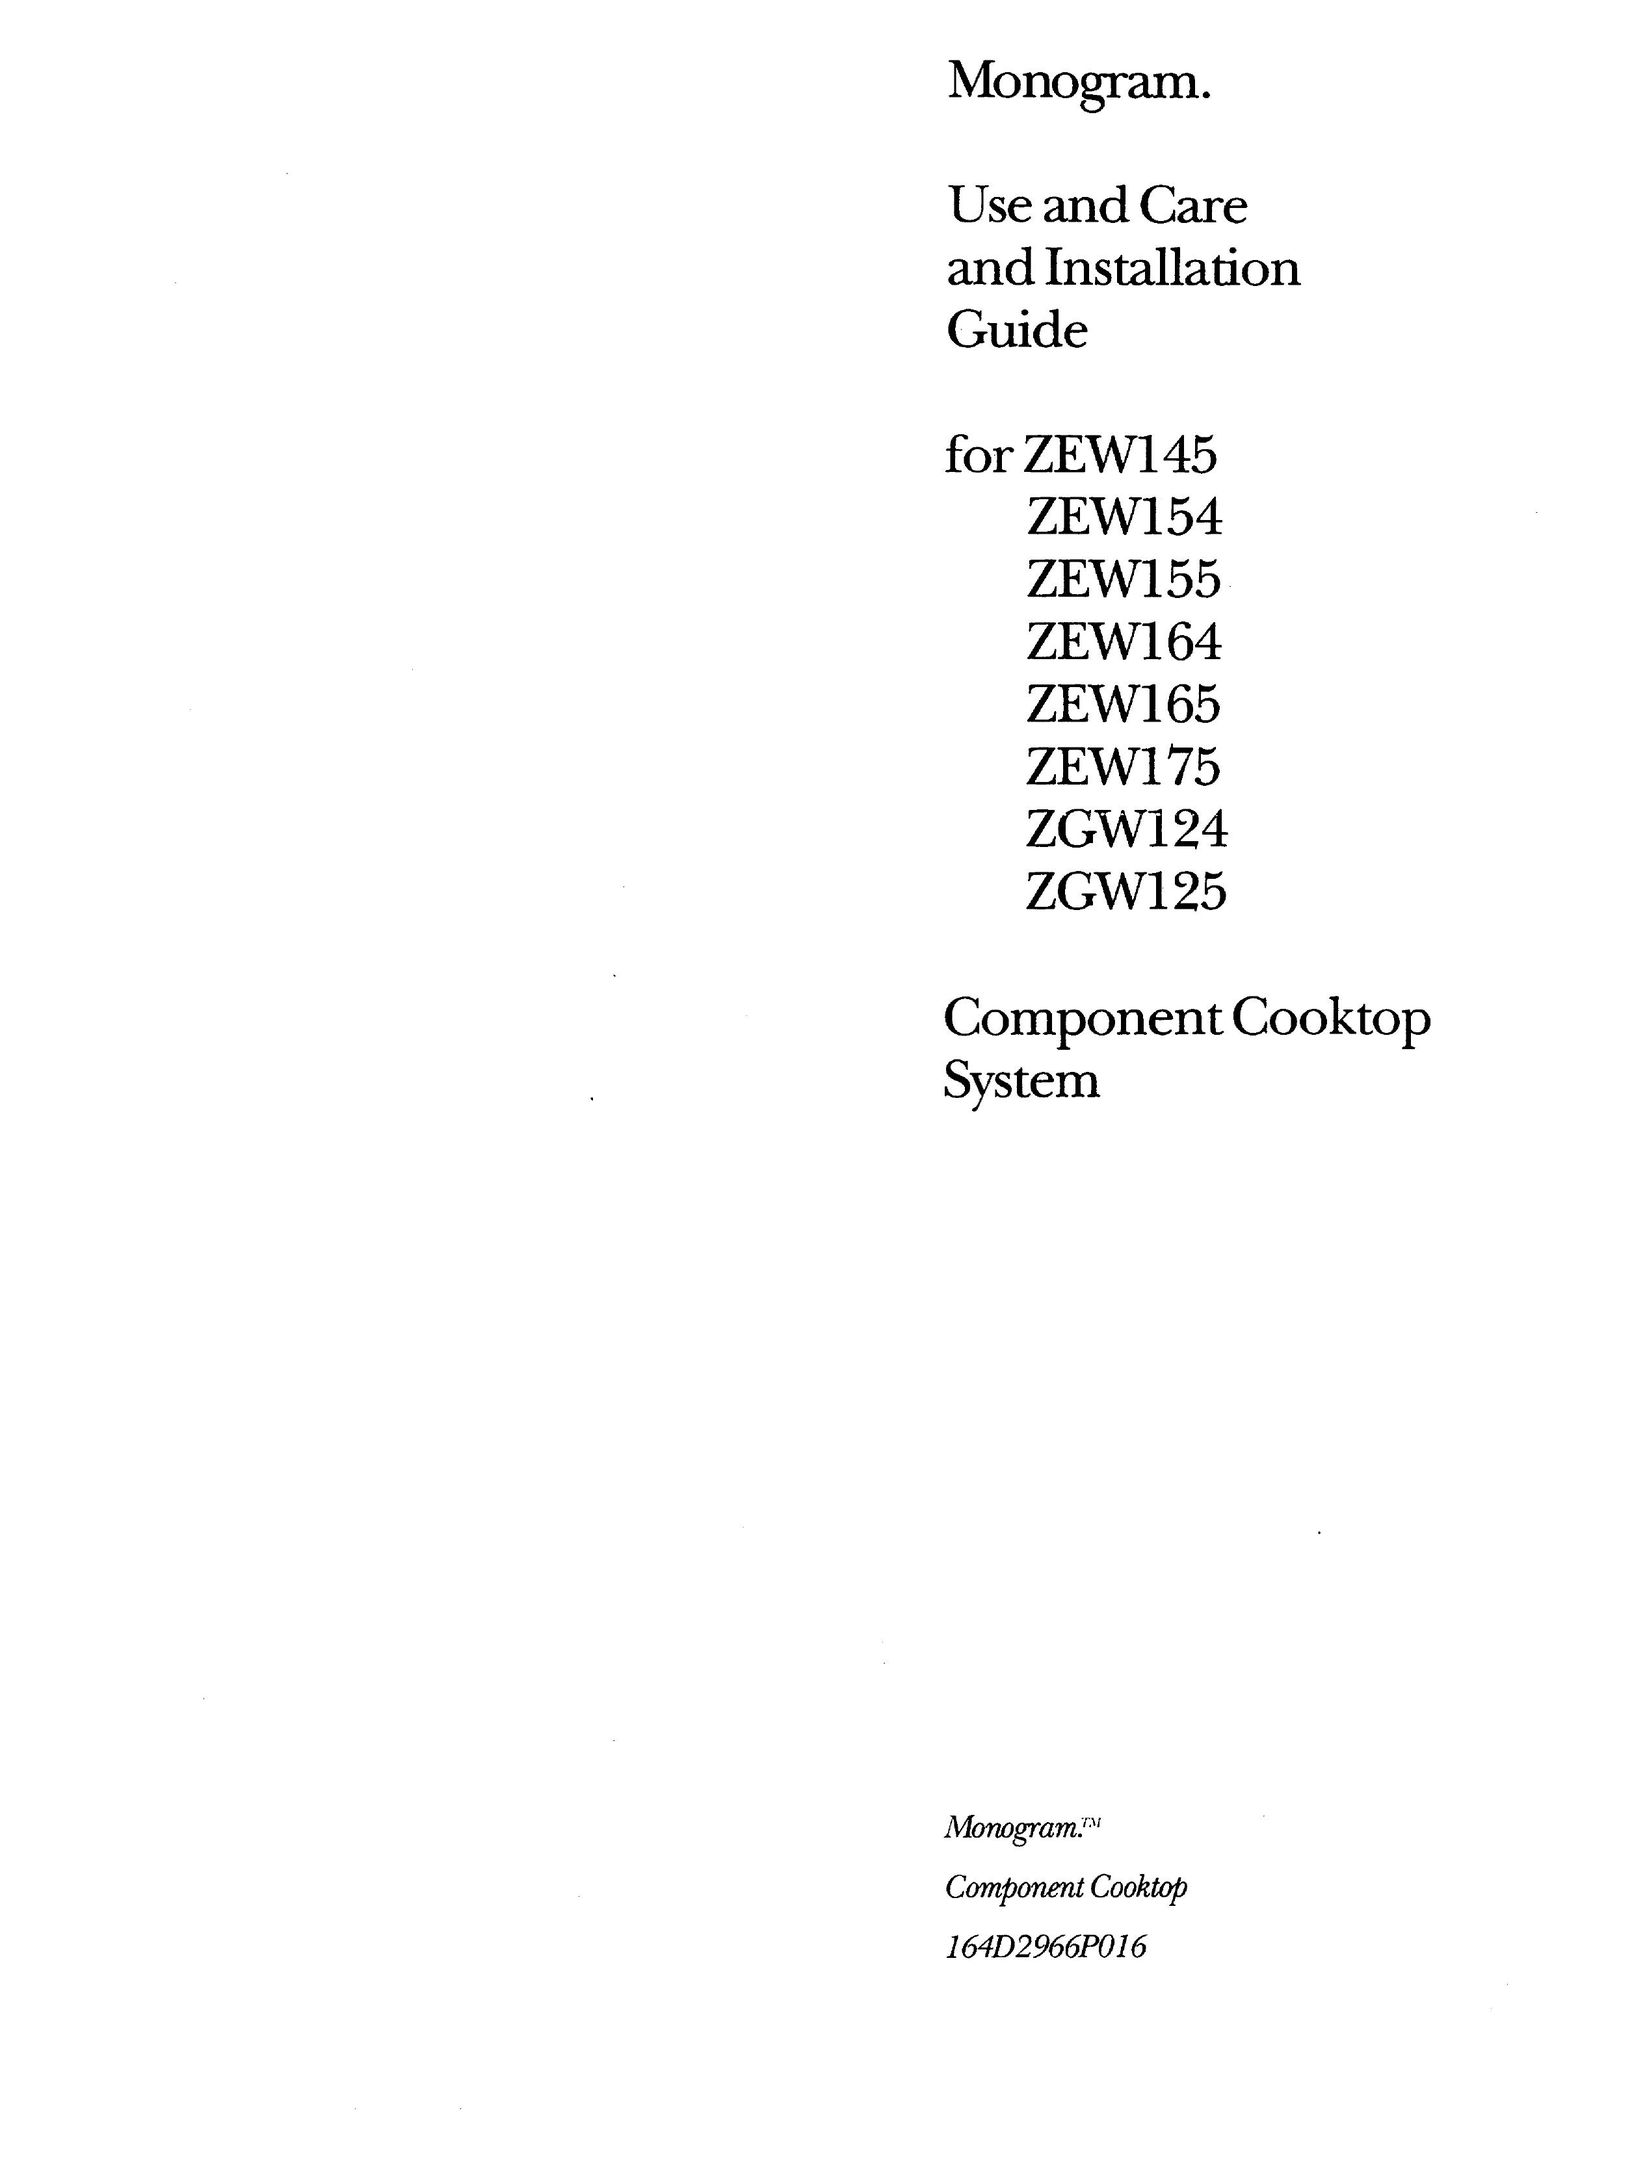 GE Monogram ZEW155 Cooktop User Manual